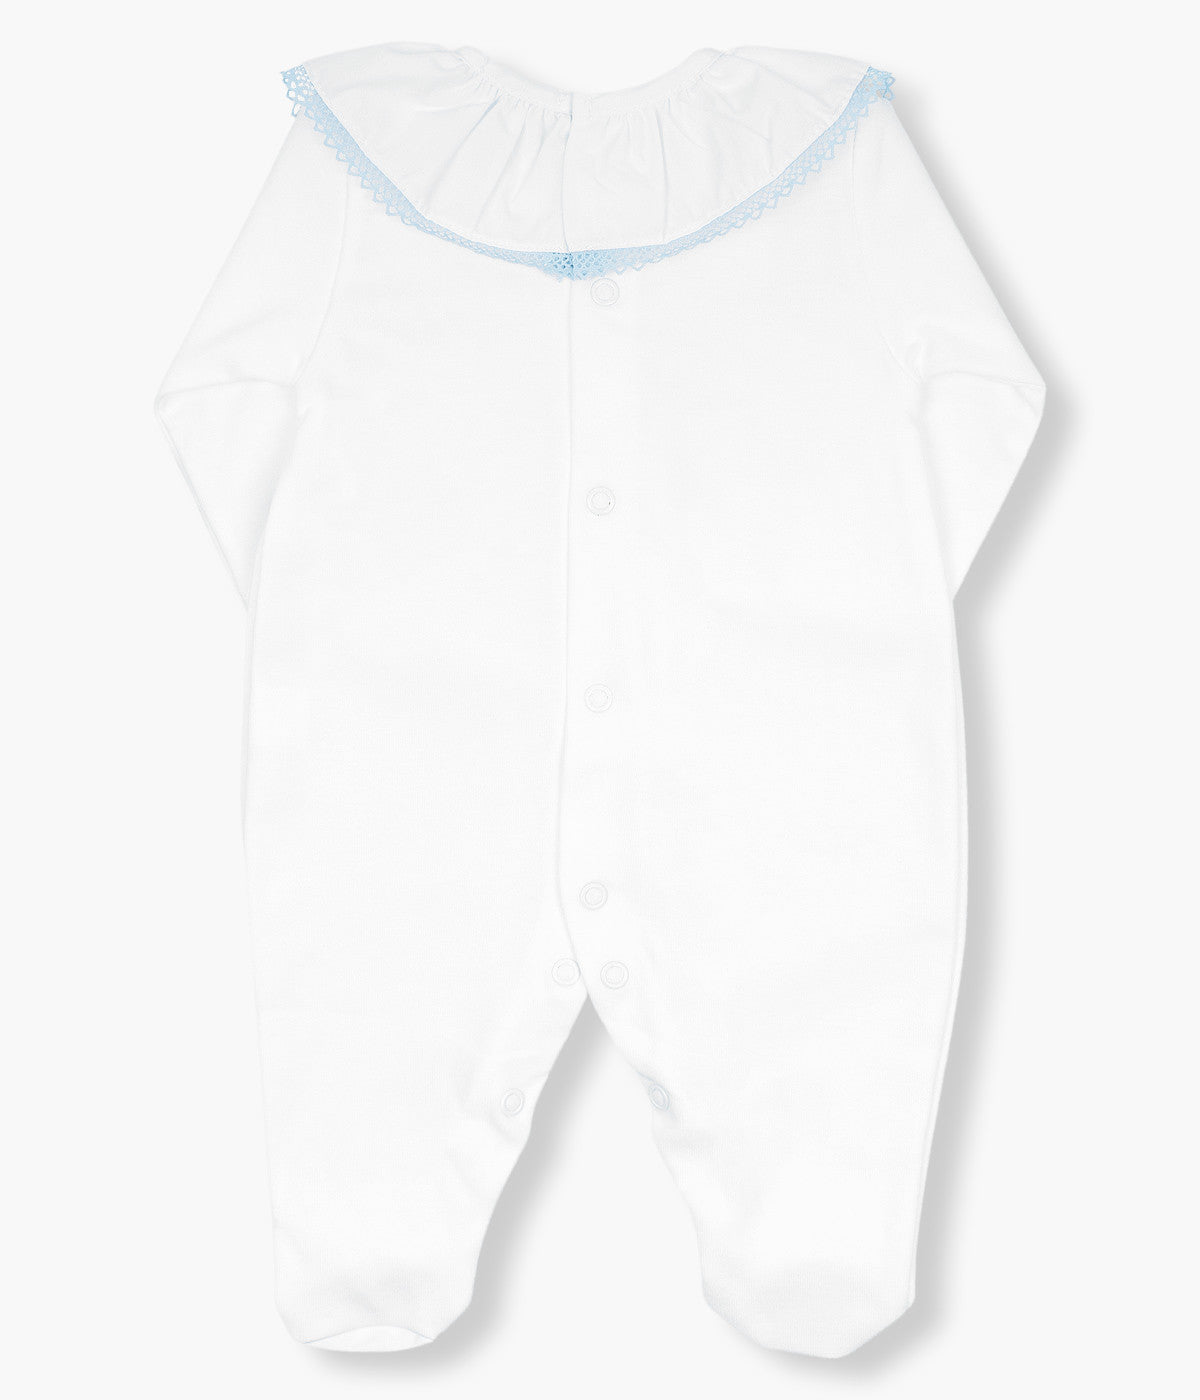 Babygrow Algodão Gola Folho para Bebé - Branco e Azul